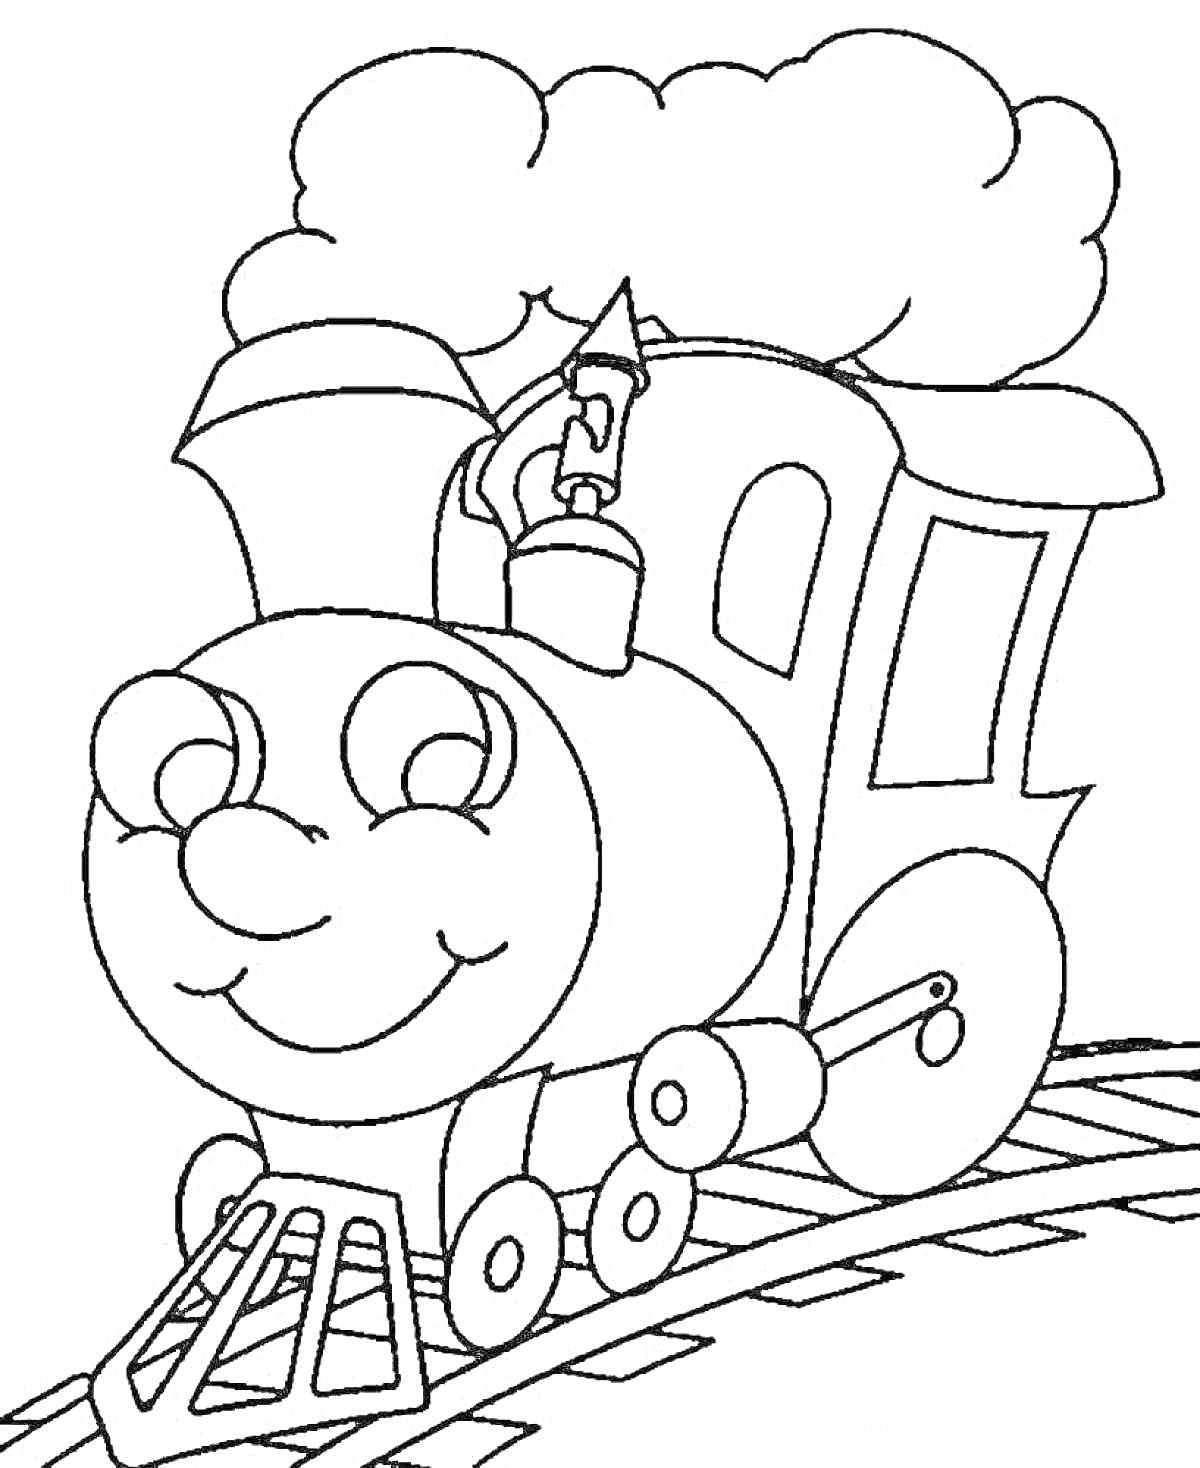 Раскраска Паровозик с улыбкой на железной дороге под облачным небом